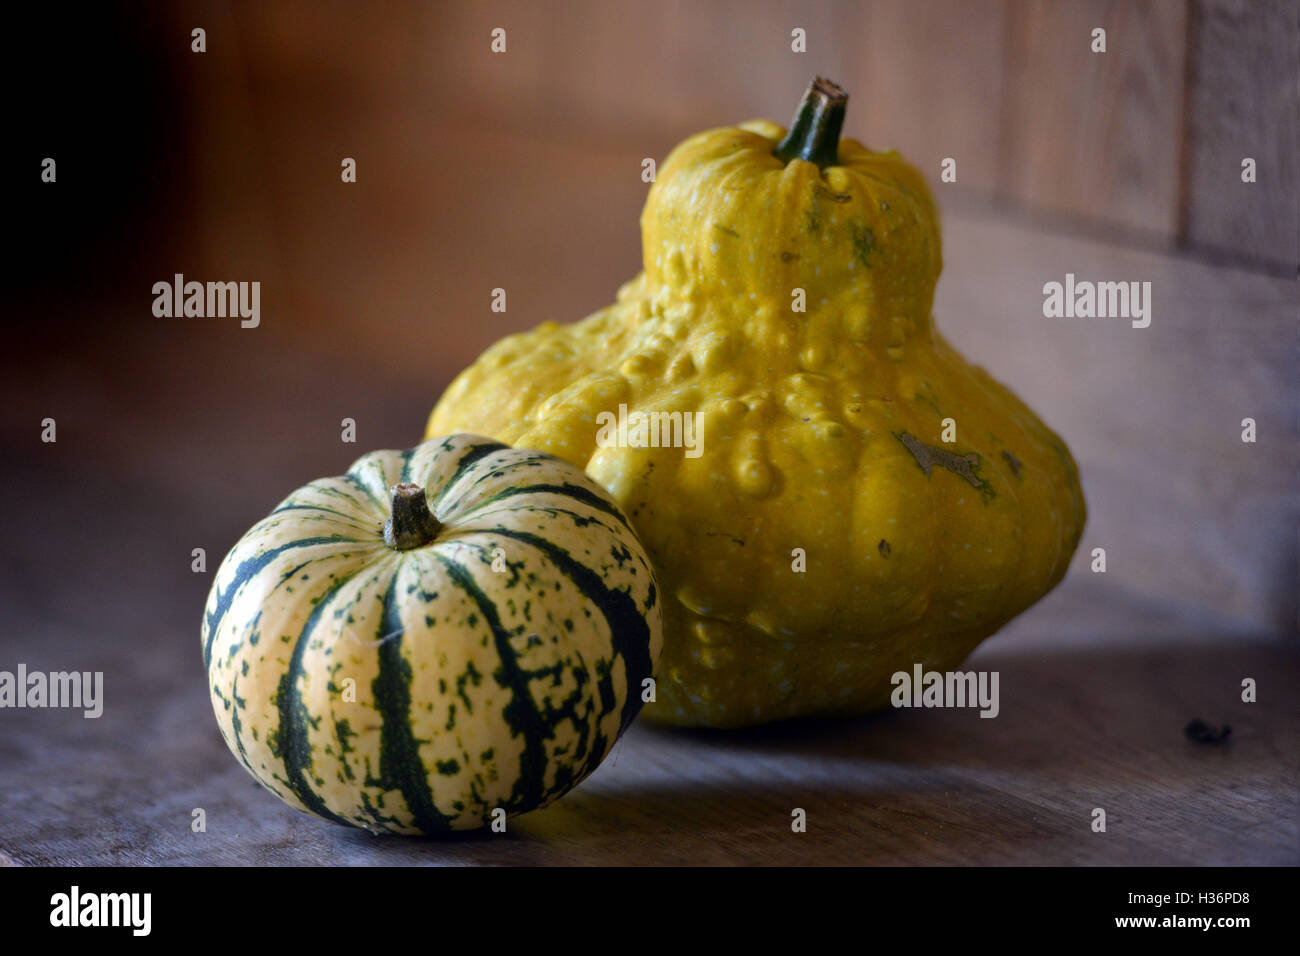 Autumn squashes Stock Photo